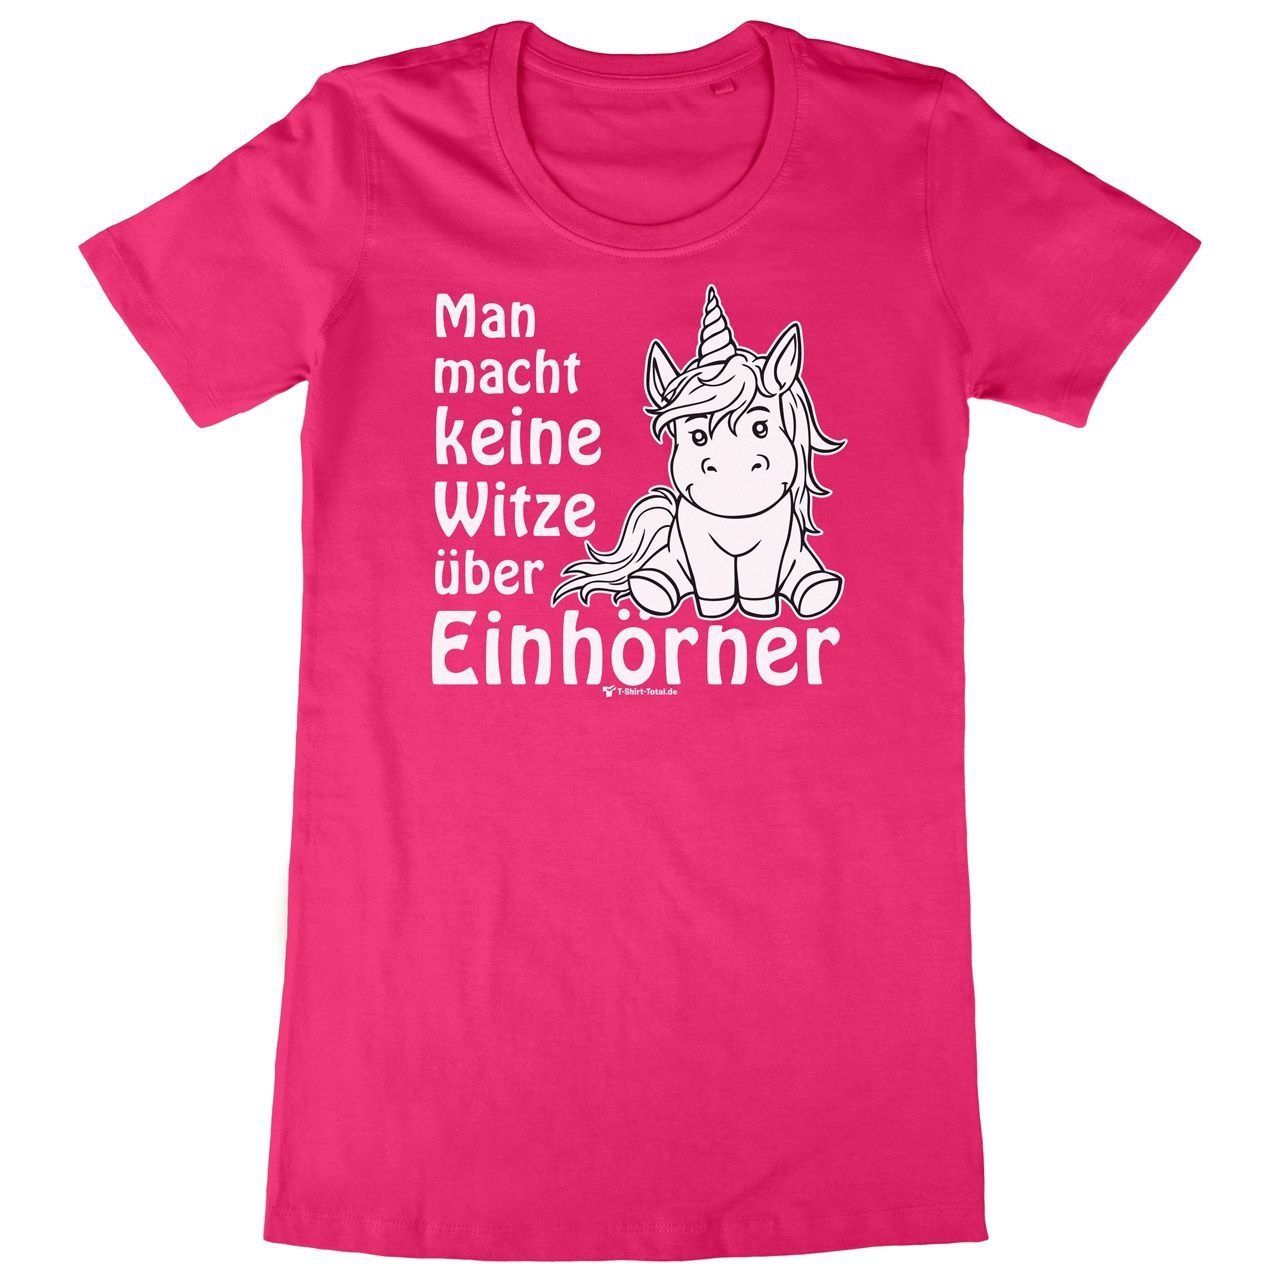 Einhorn Witze Woman Long Shirt pink Medium